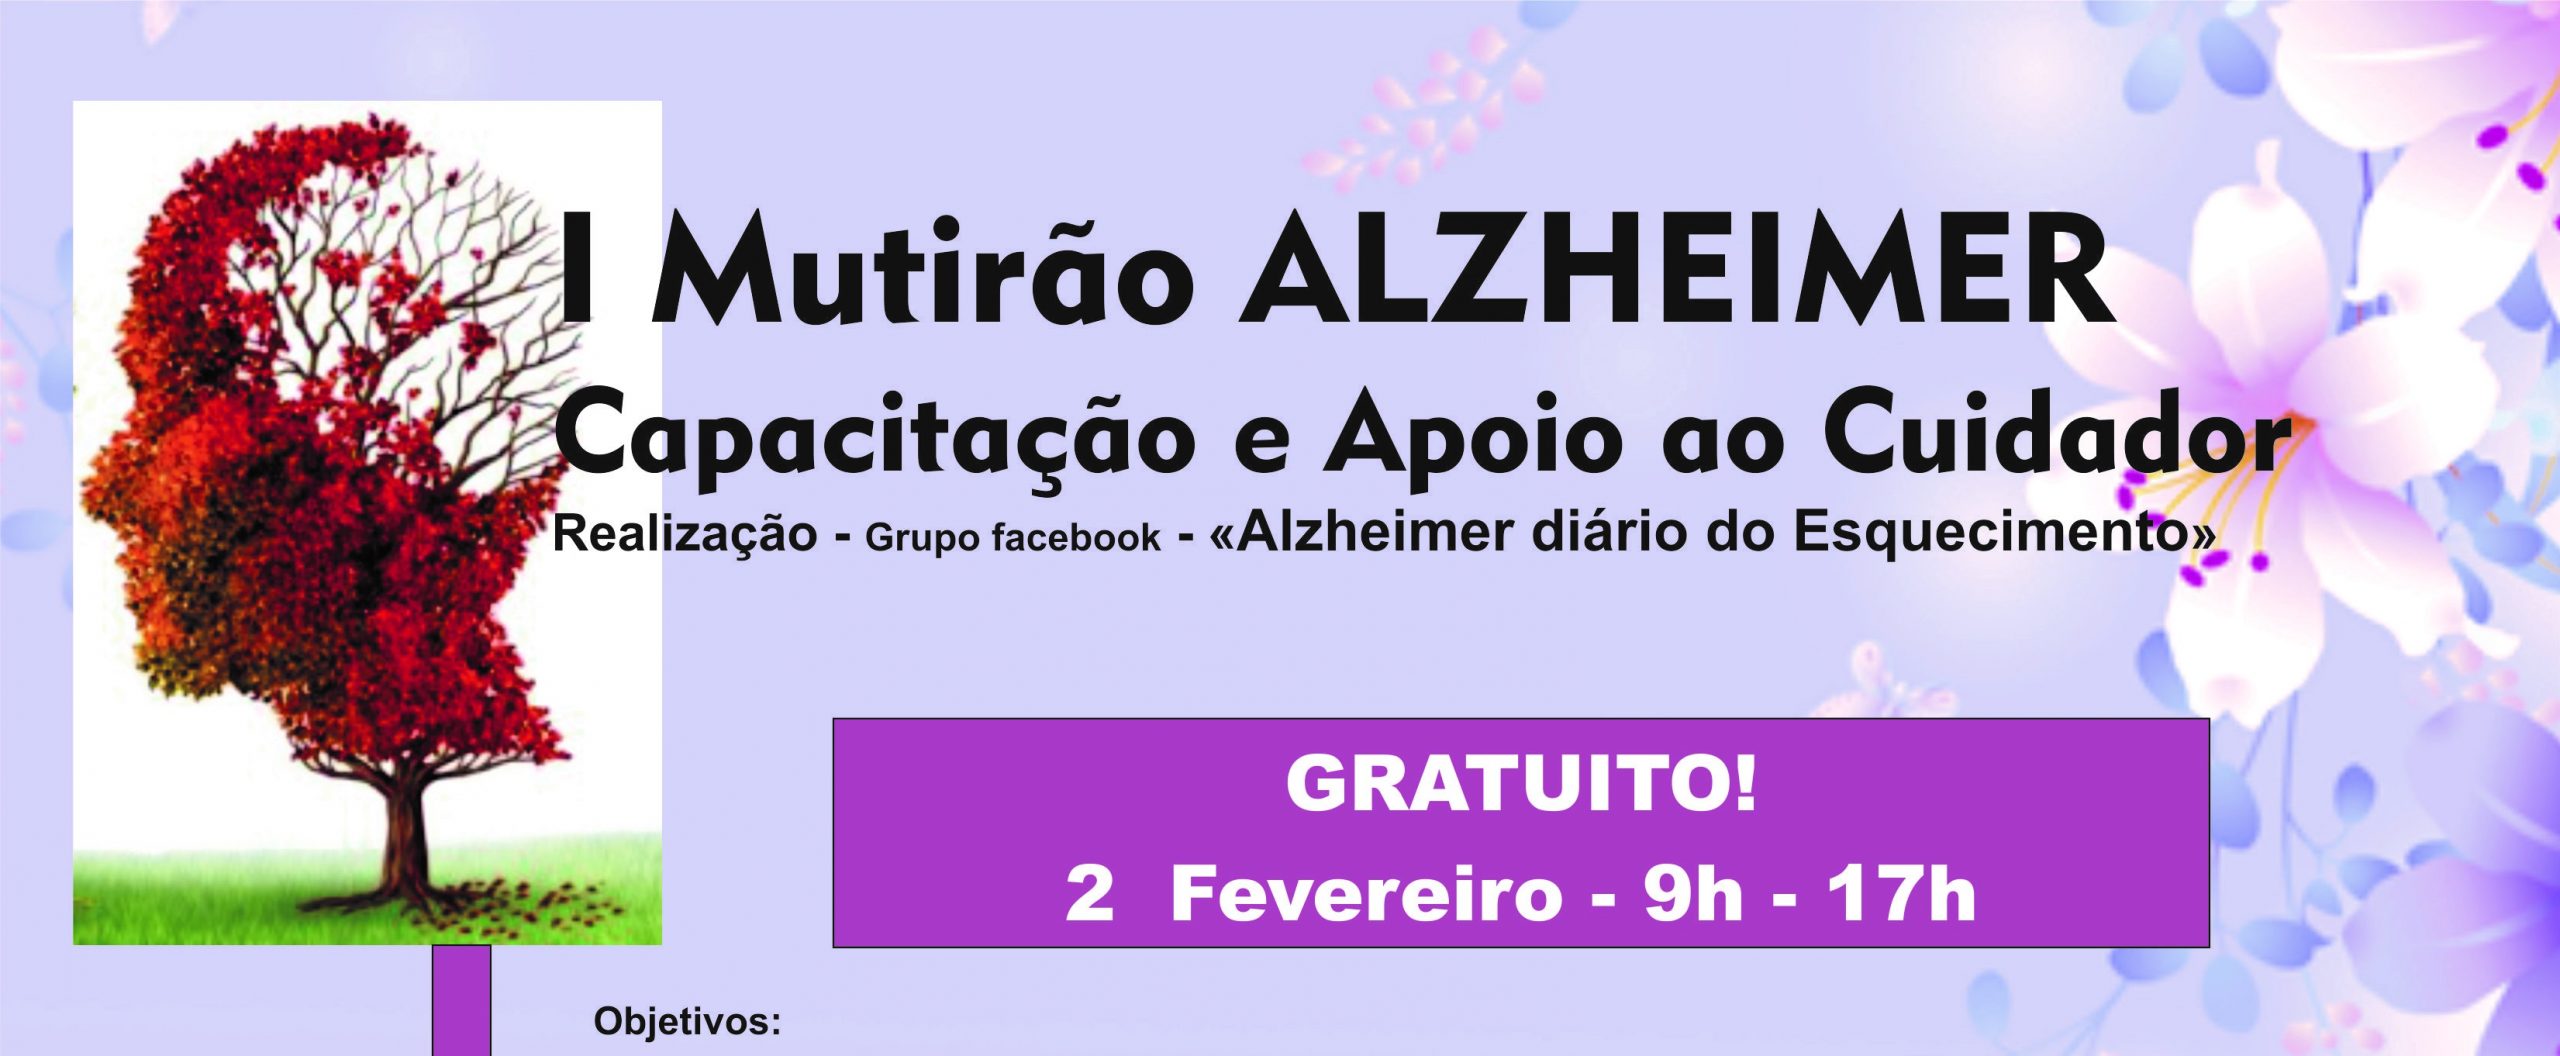 Mutirão de capacitação e apoio para cuidadores de Alzheimer